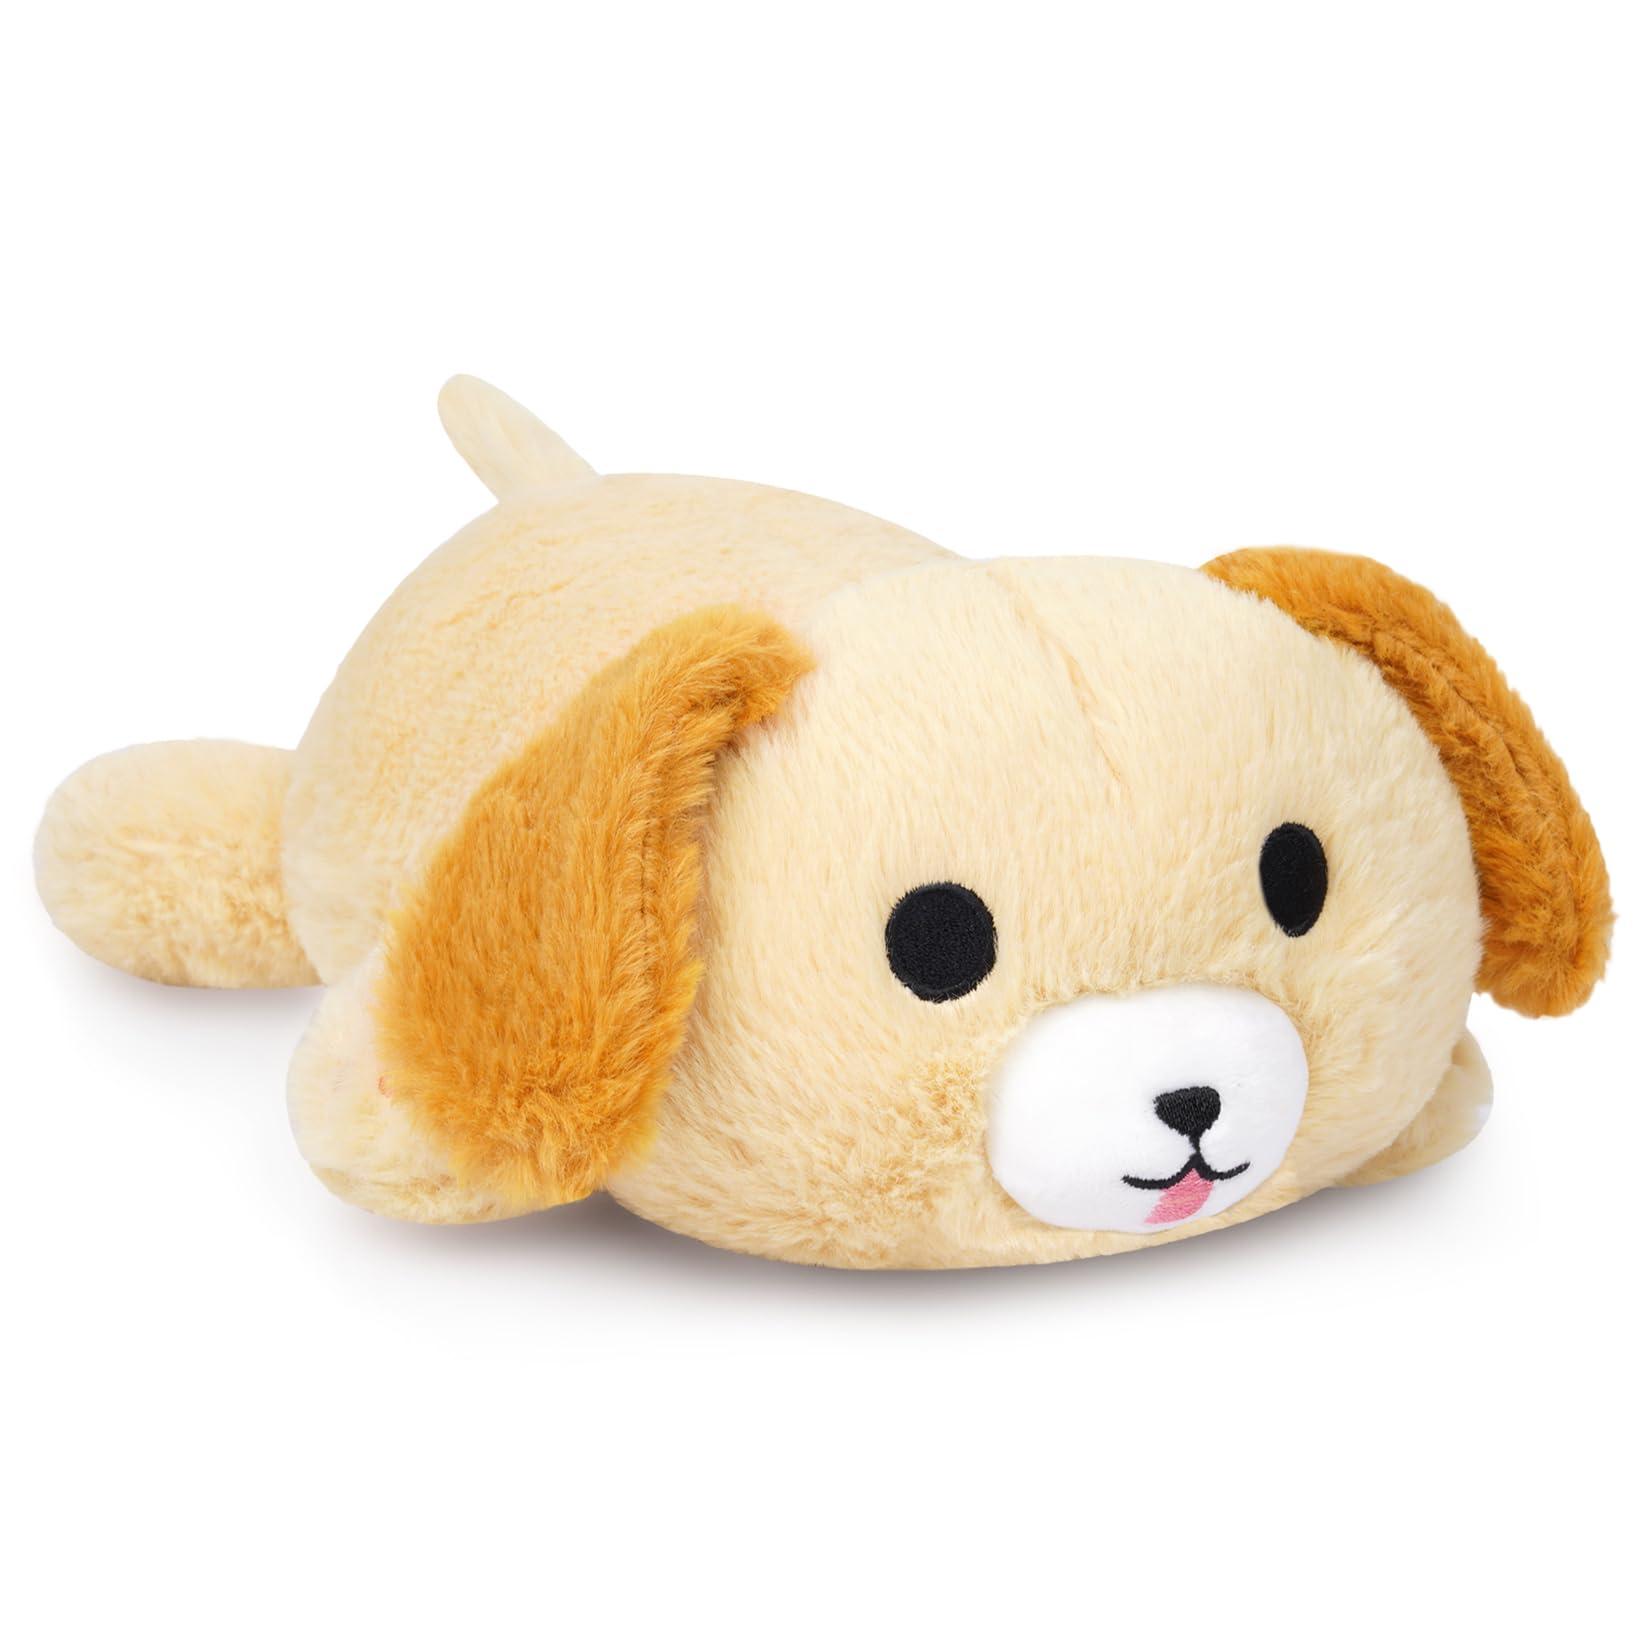 Yamepuia Dog Plush Pillow Dog Stuffed Animal Toy, 44cm Cute Plush Dog Stuffed Animal, Stuffed Dog Plushies, Birthday Gift for Boys and Girls